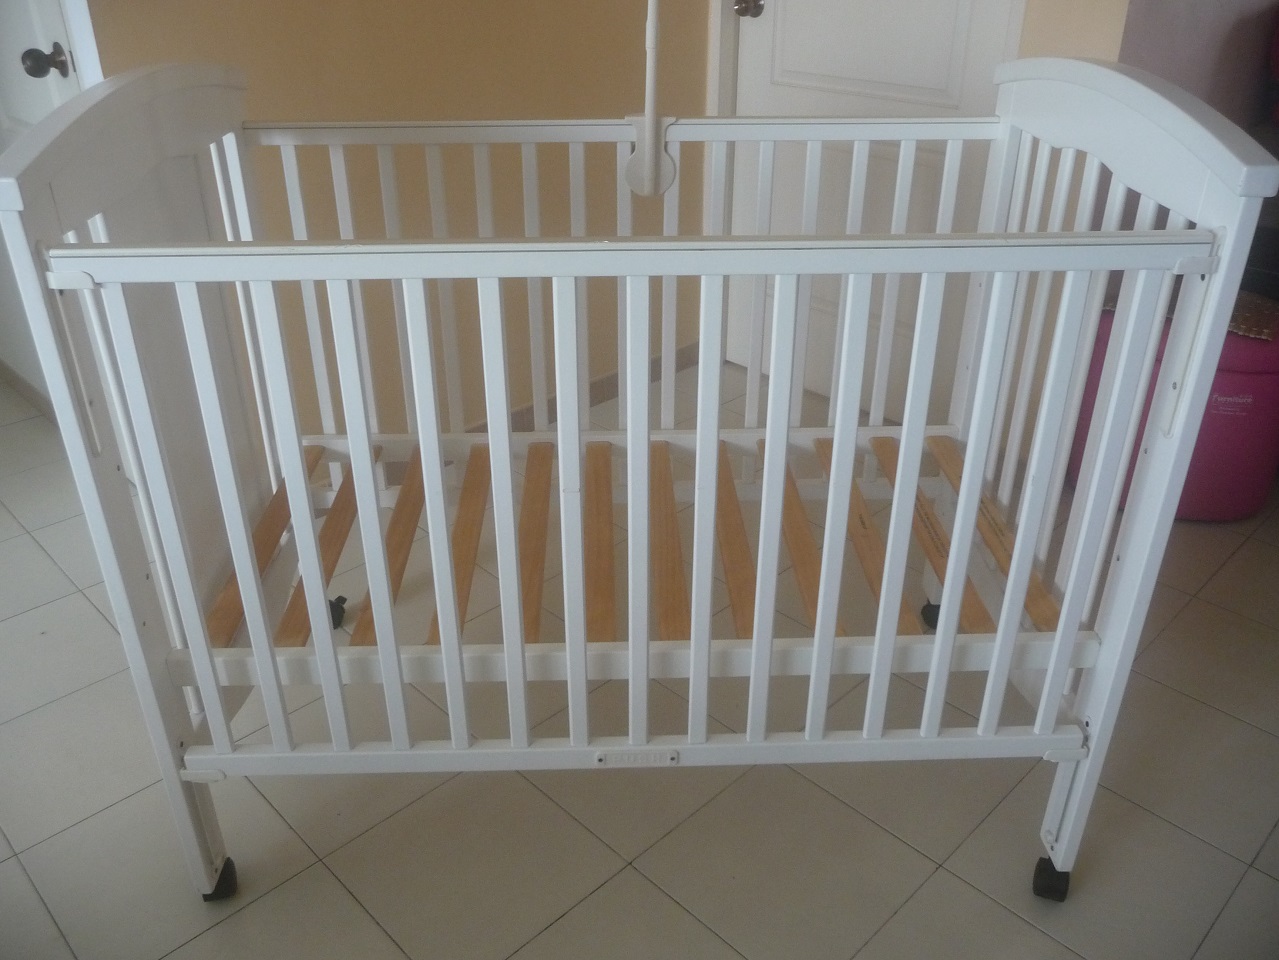 婴儿床9.5成新， $60,  长宽高是：120cm, 72cm, 100cm 围栏提起来